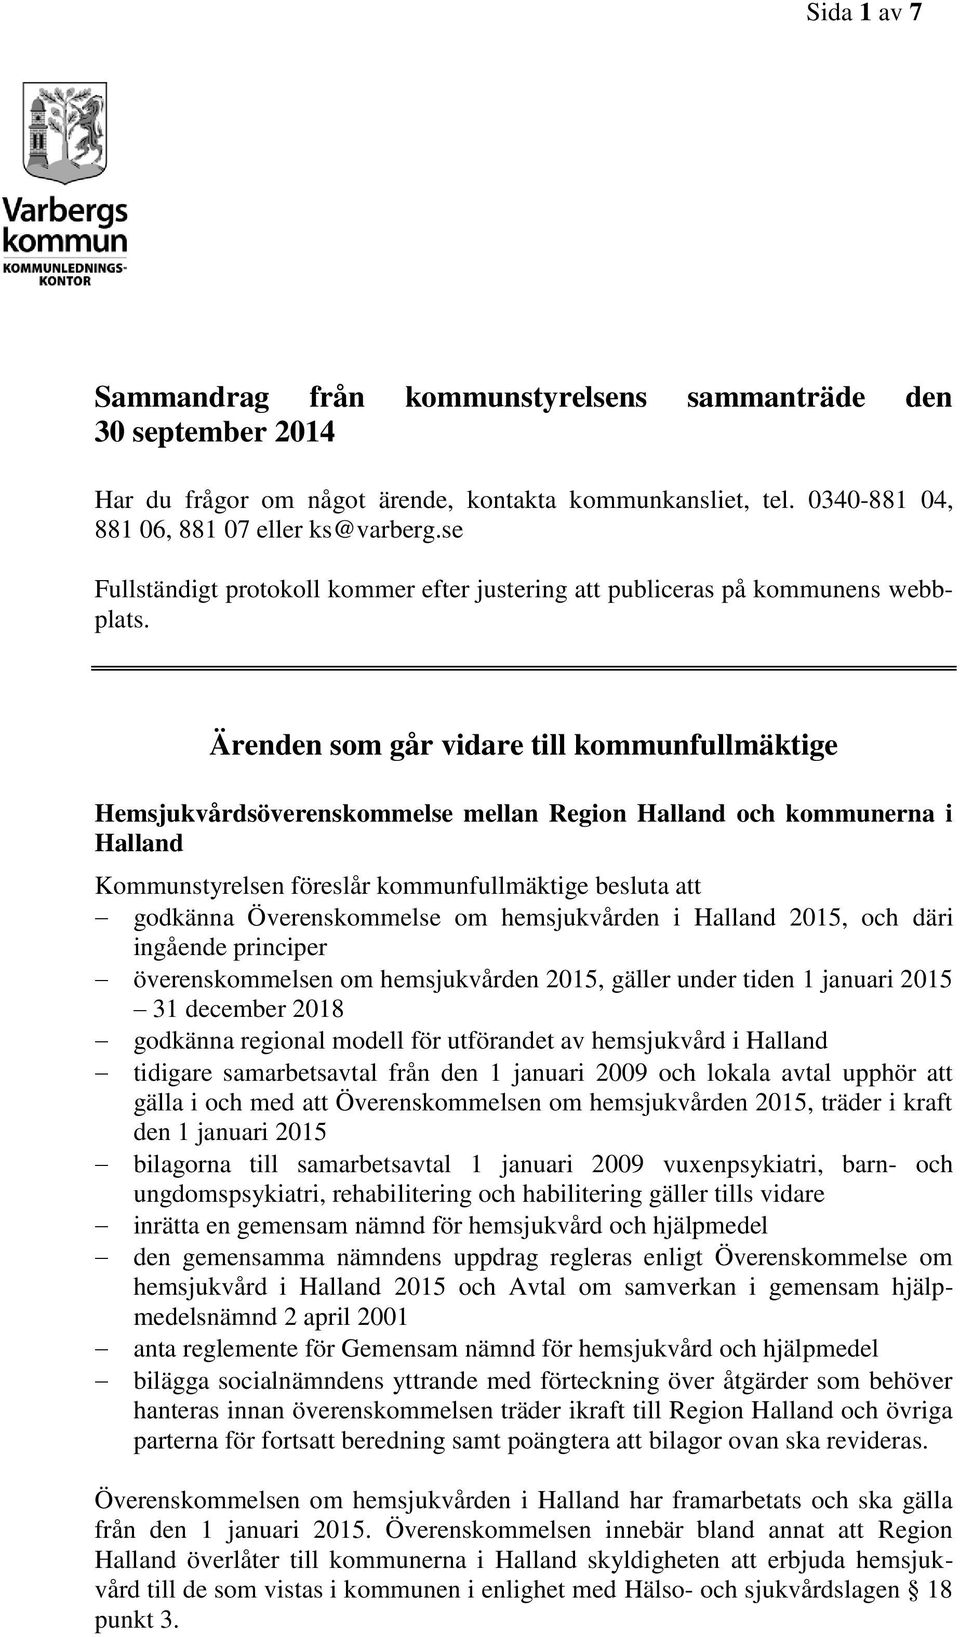 Ärenden som går vidare till kommunfullmäktige Hemsjukvårdsöverenskommelse mellan Region Halland och kommunerna i Halland godkänna Överenskommelse om hemsjukvården i Halland 2015, och däri ingående